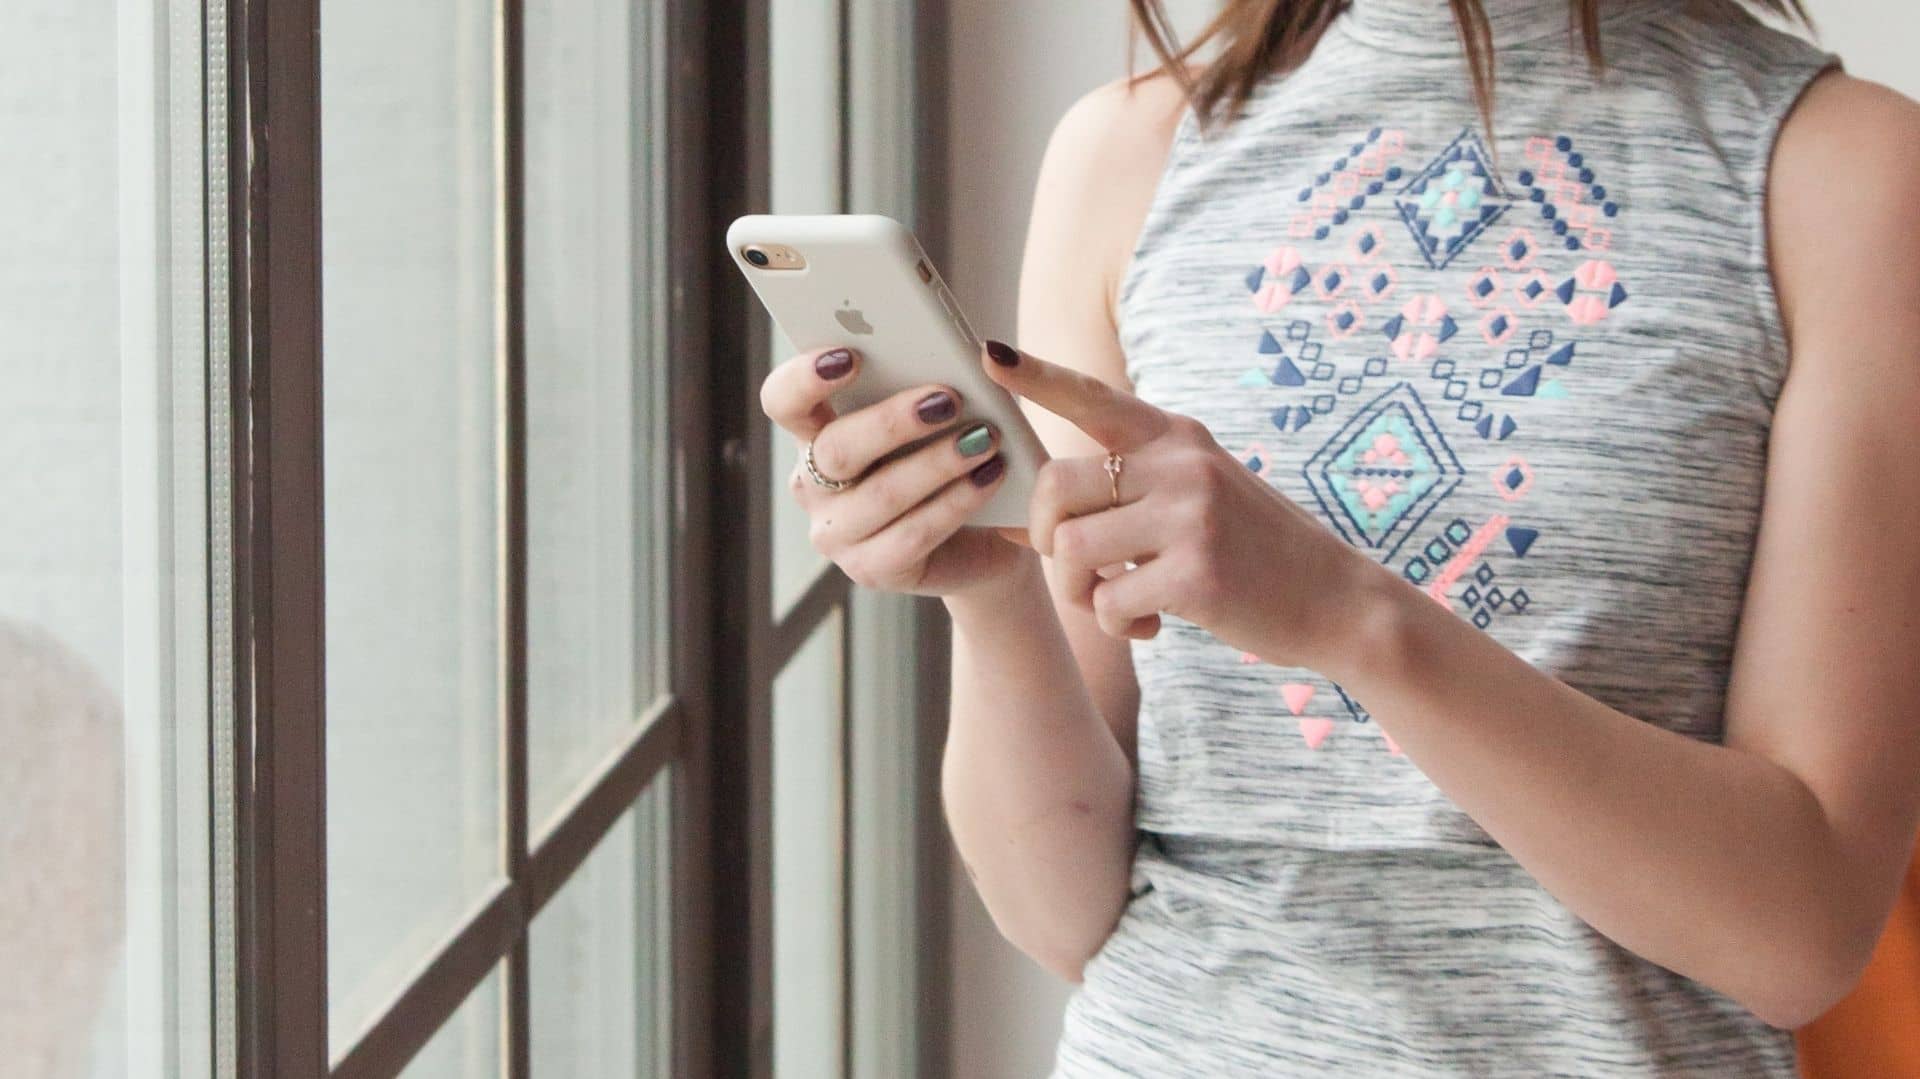 Mejores apps para combinar ropa de mujer l Todo Android